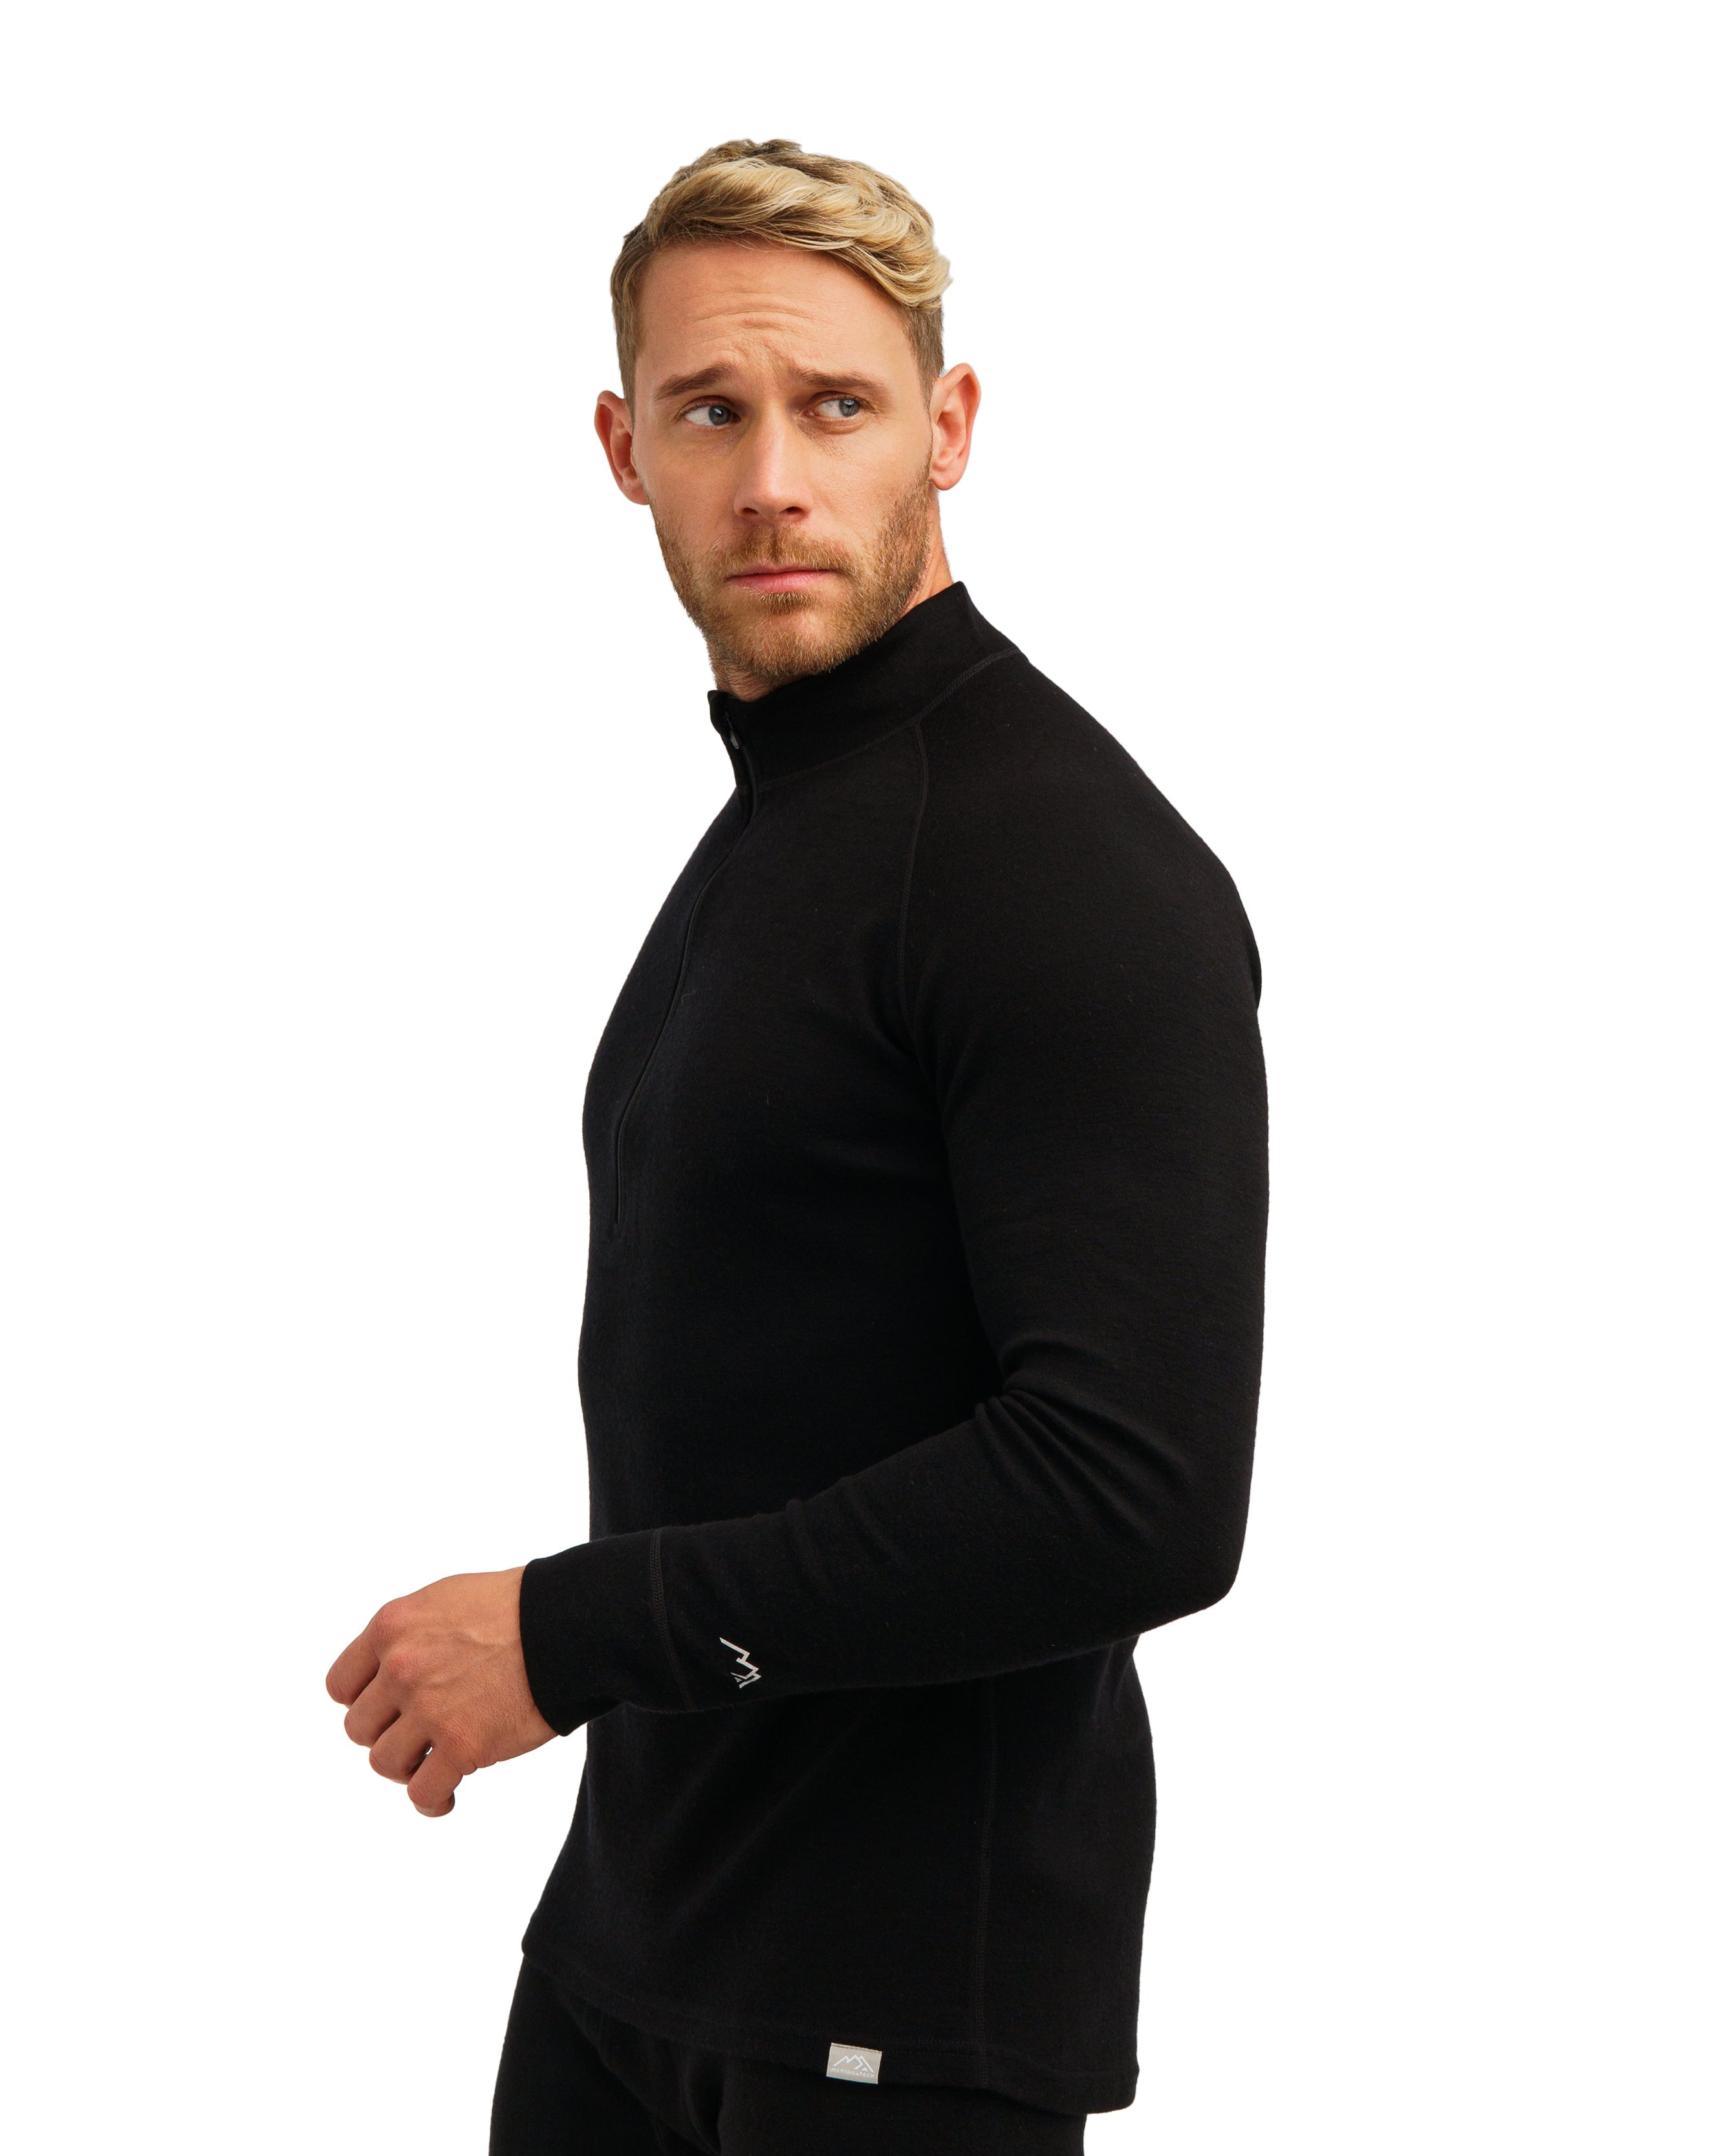 Merino Wool Half Zip Long Sleeve  Black